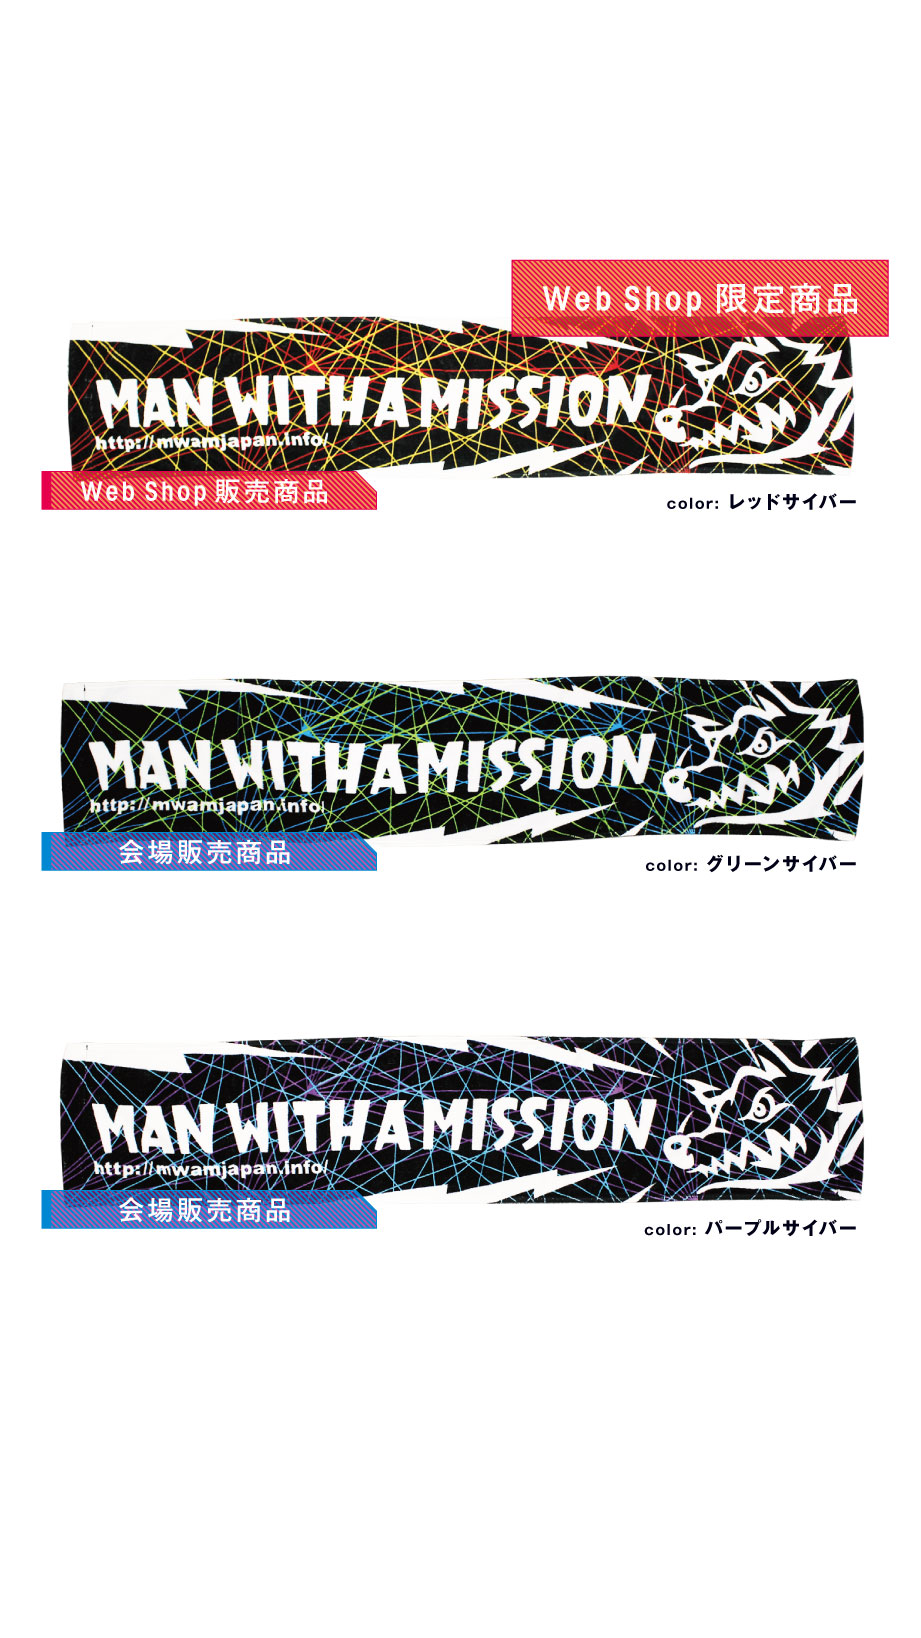 日本製・綿100% MAN WITH A MISSION マンウィズ タオル - 通販 